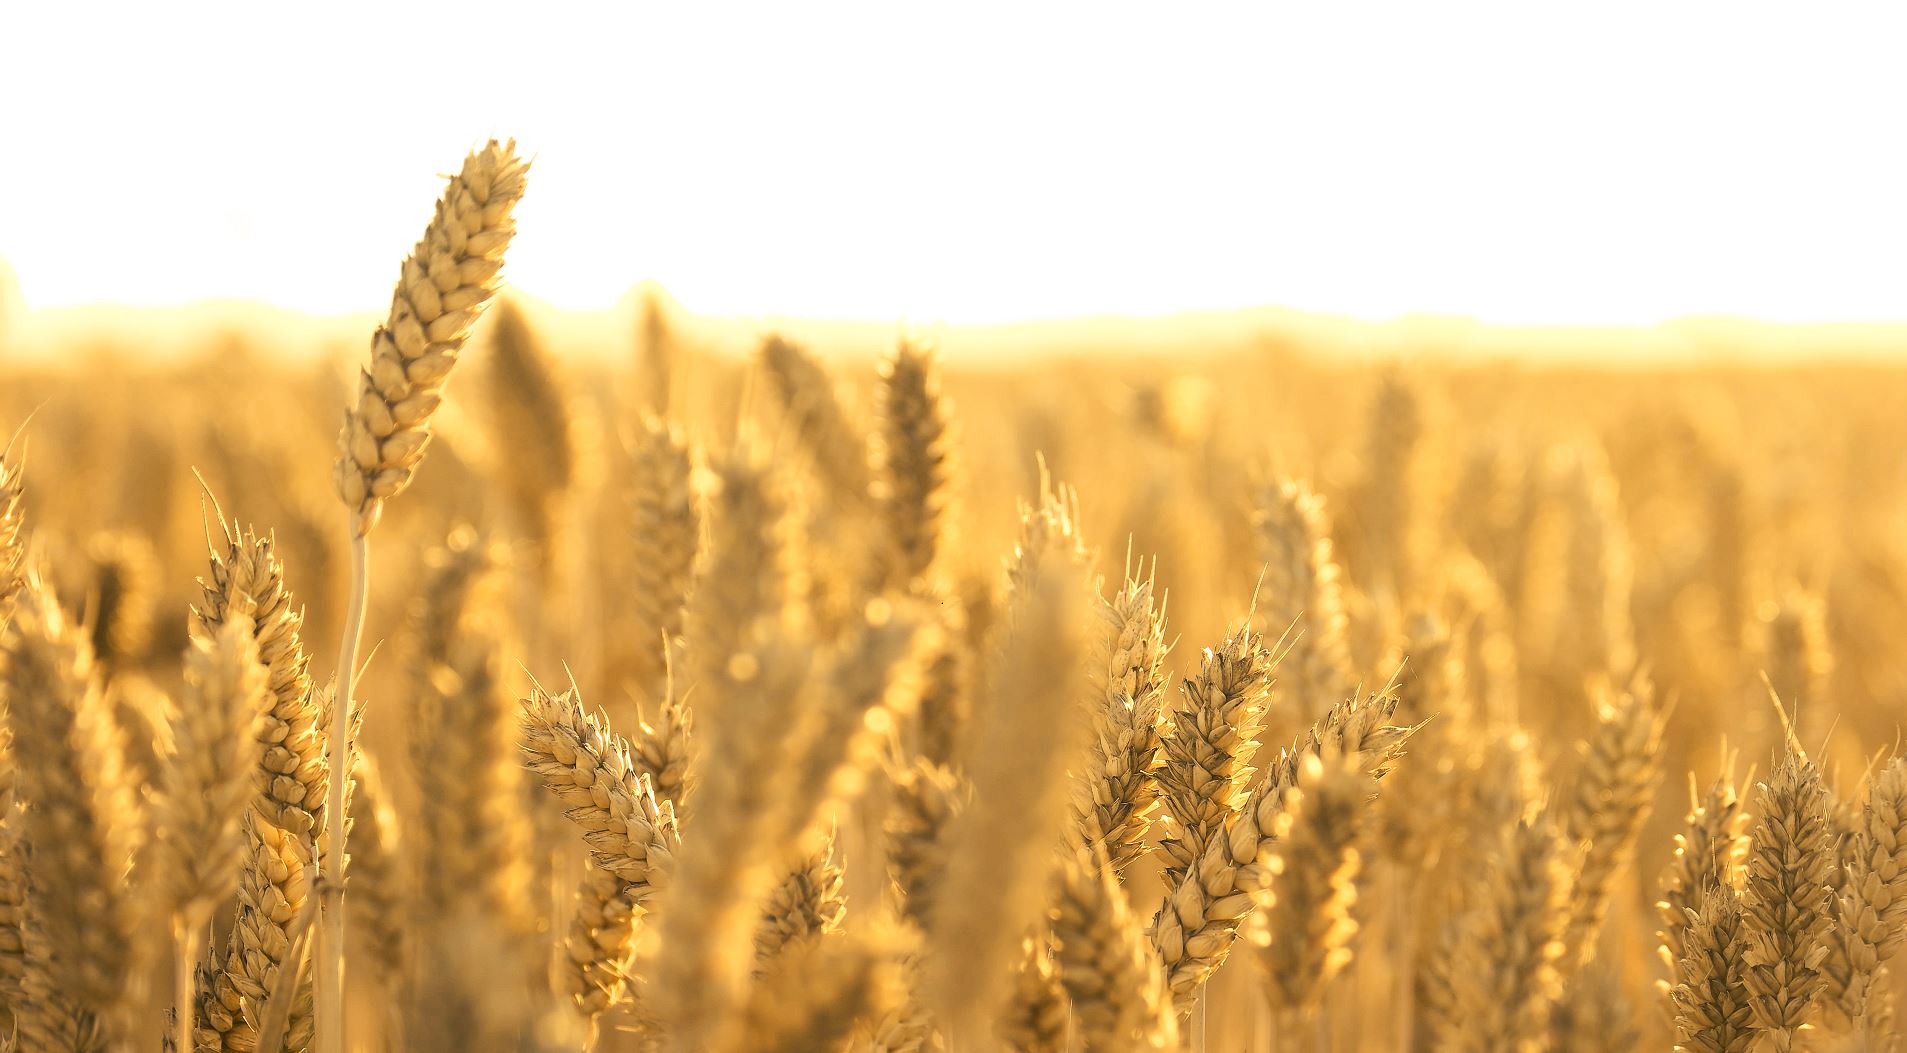 مصر Egypt زرعت أكبر مساحة من القمح في تاريخها هذا العام